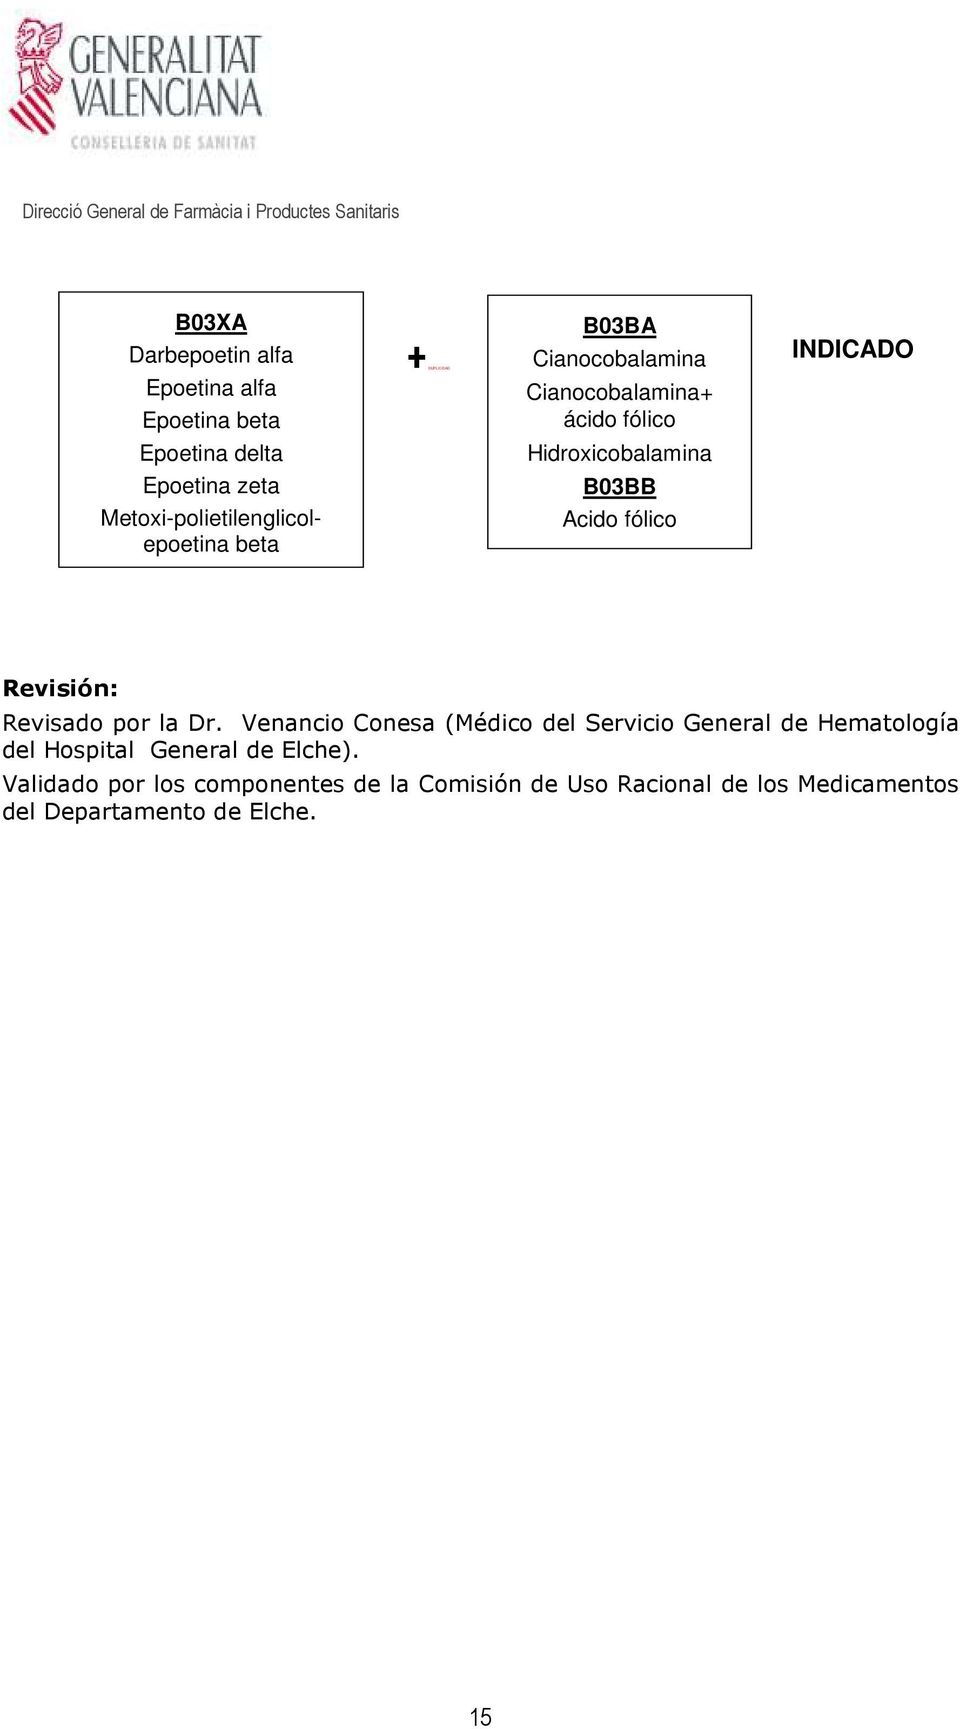 Venancio Conesa (Médico del Servicio General de Hematología del Hospital General de Elche).